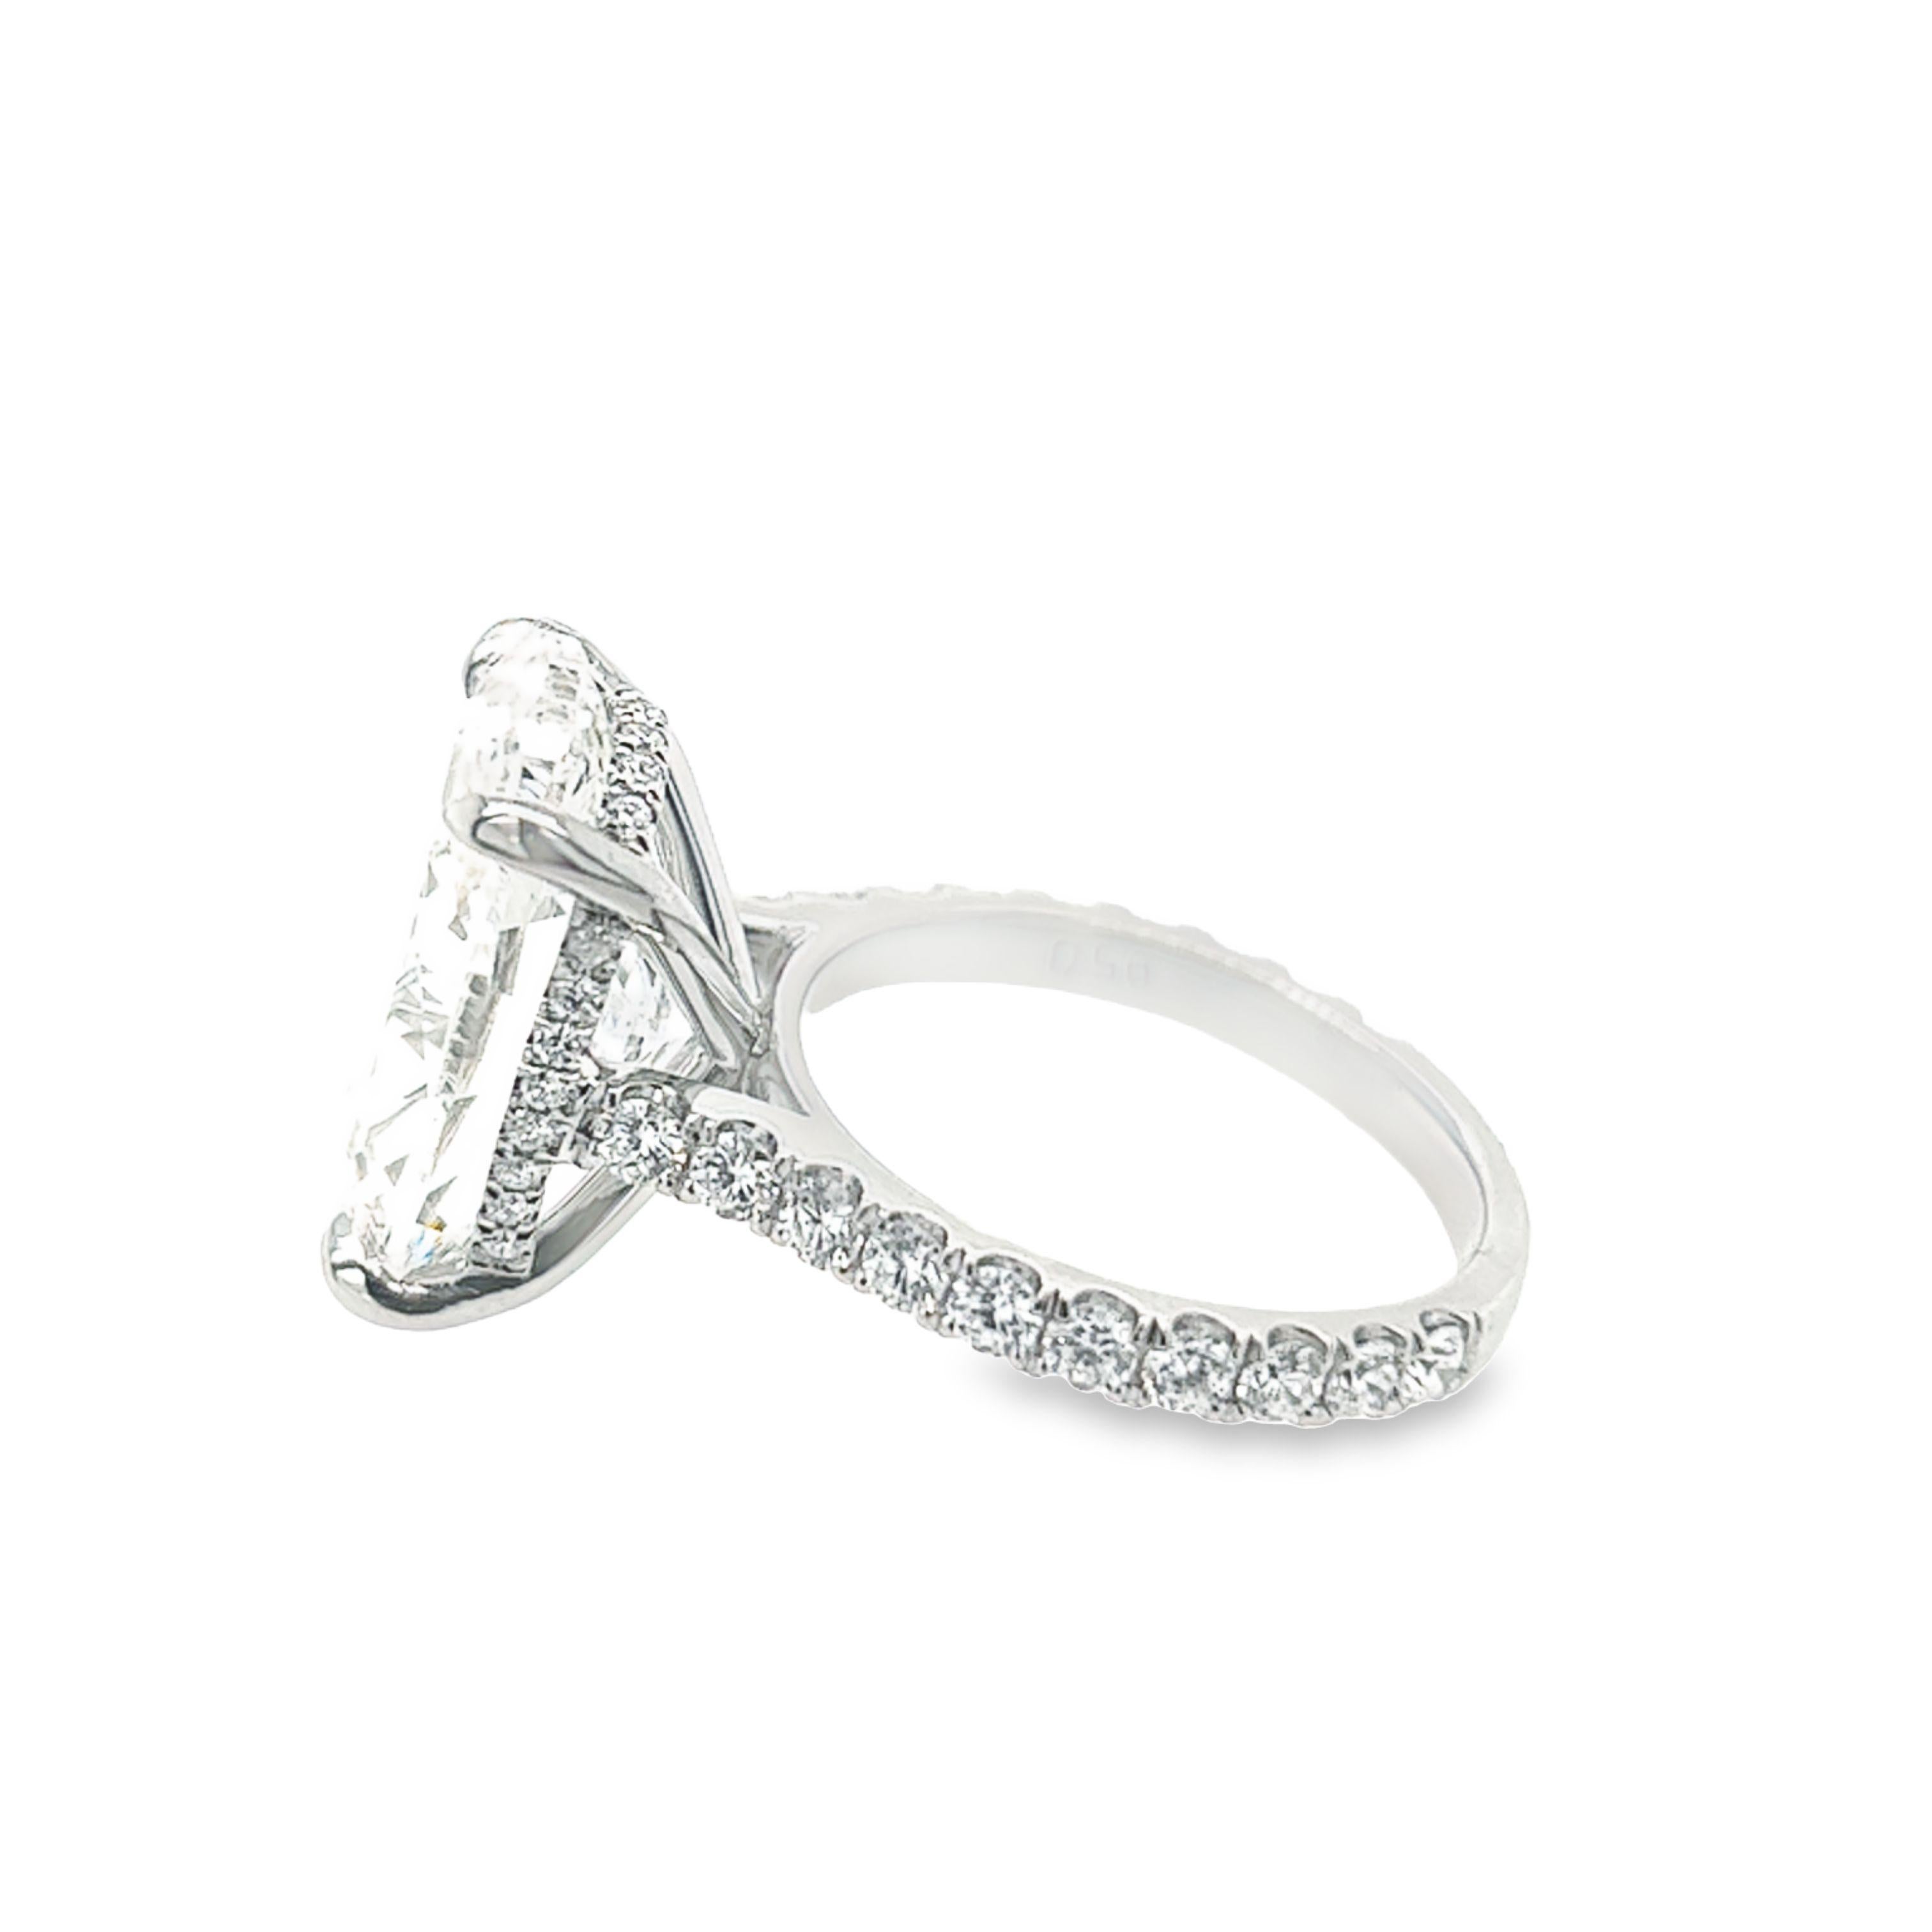 10ct oval diamond ring